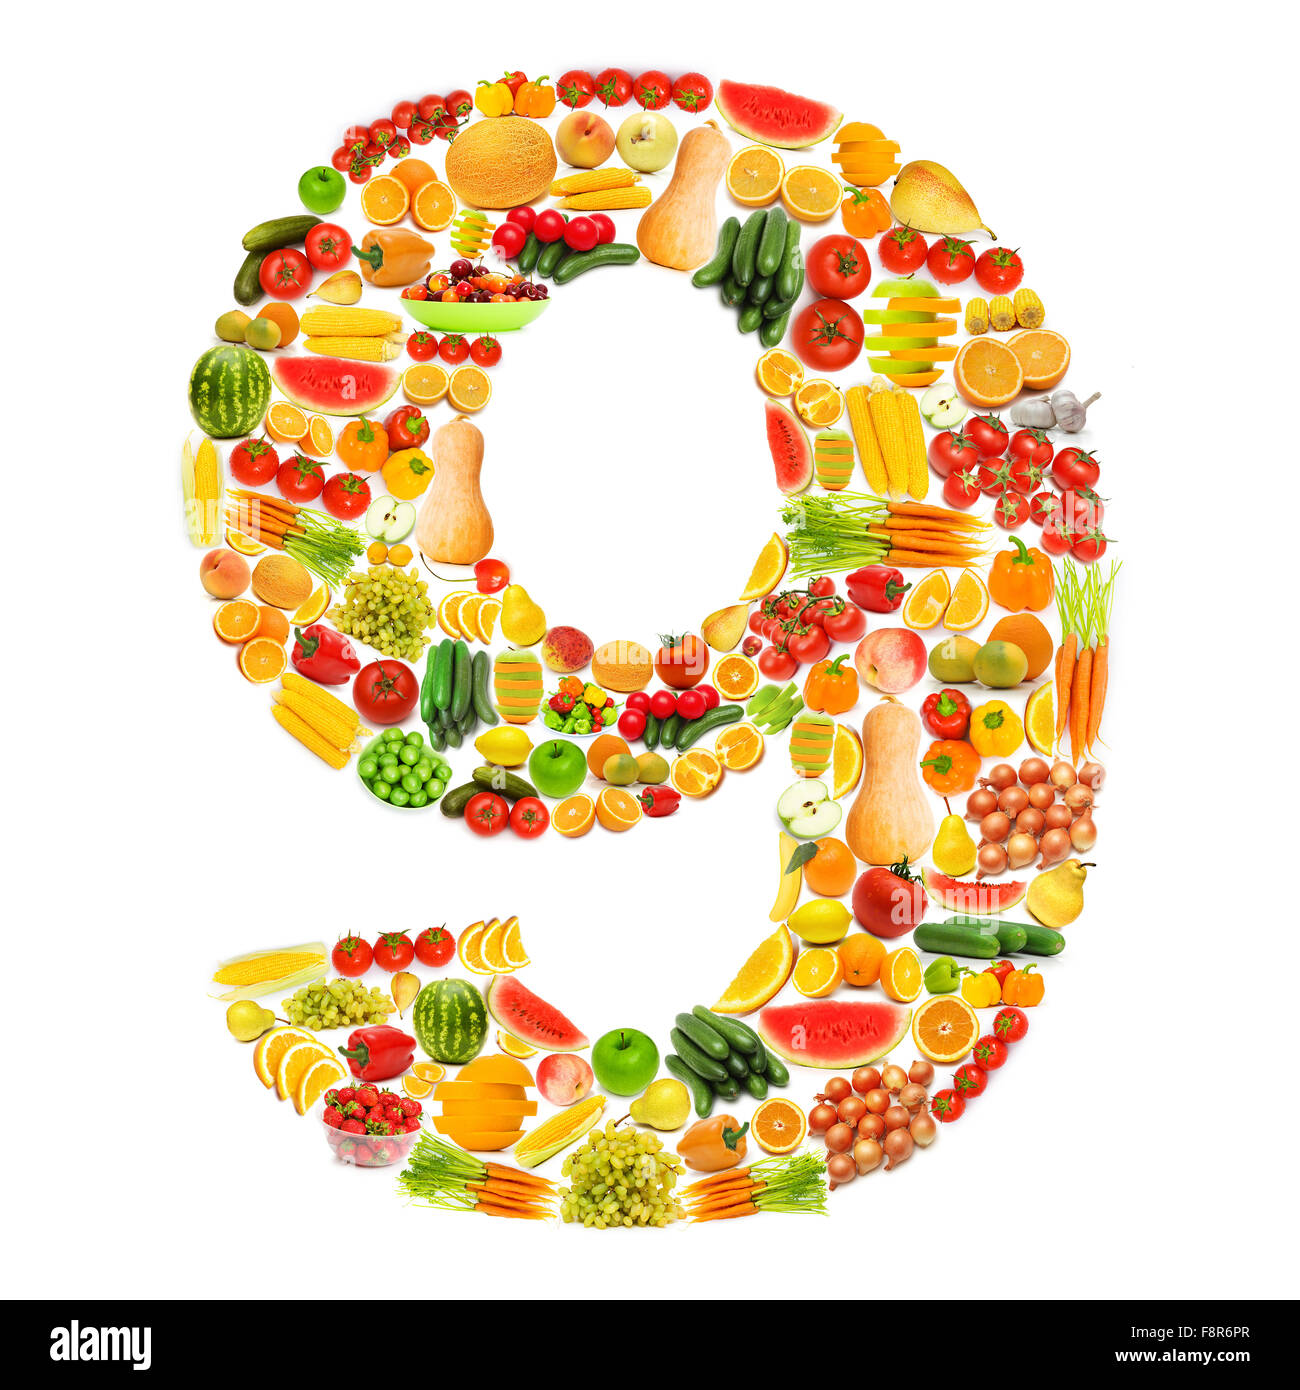 Цифры из овощей и фруктов